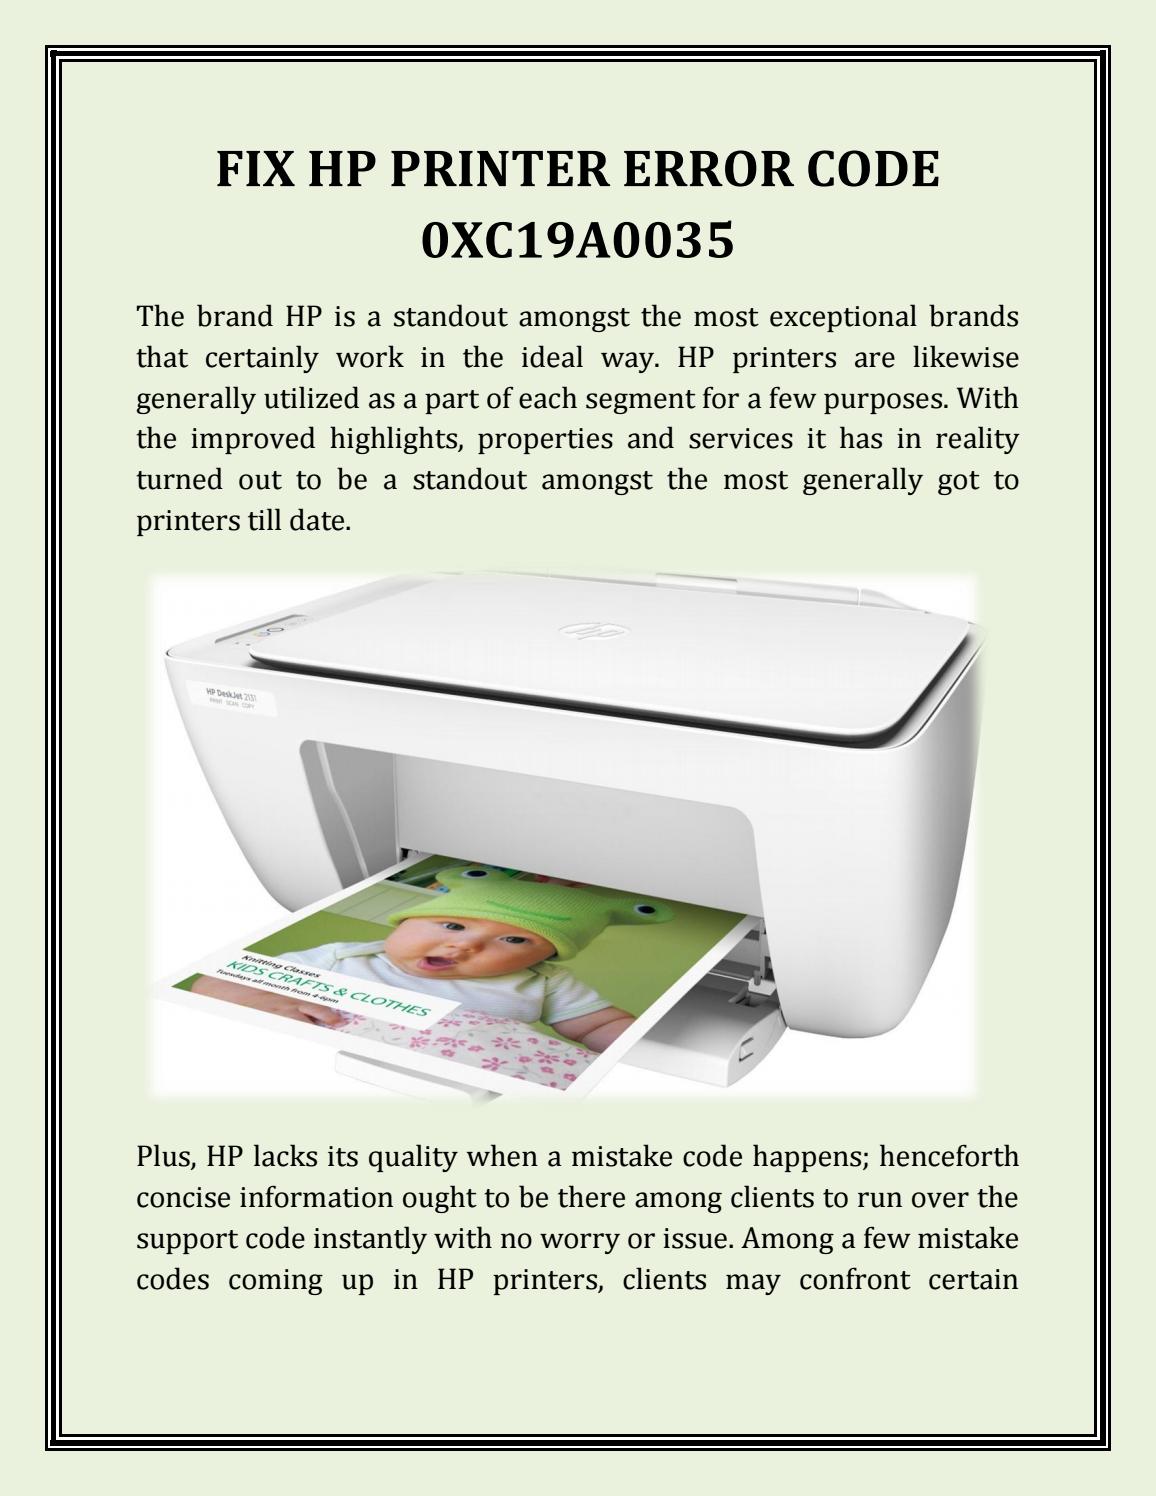 You are currently viewing Устранение неполадок, связанных с кодом ошибки вручную принтера HP Oxc19a0035, простым способом